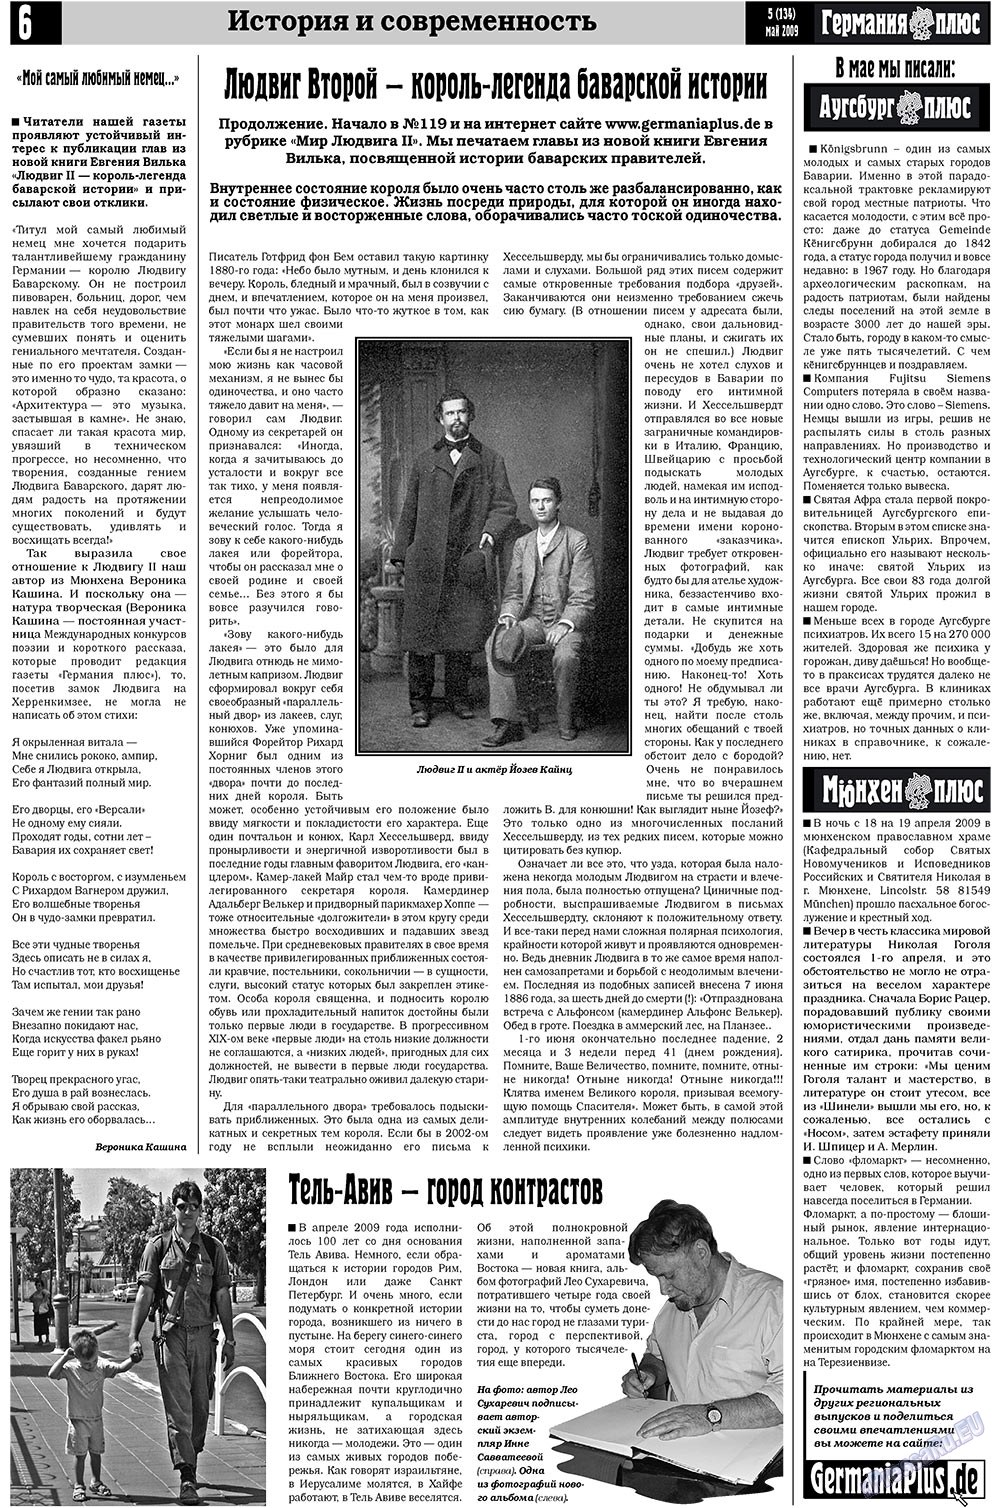 Германия плюс (газета). 2009 год, номер 5, стр. 6